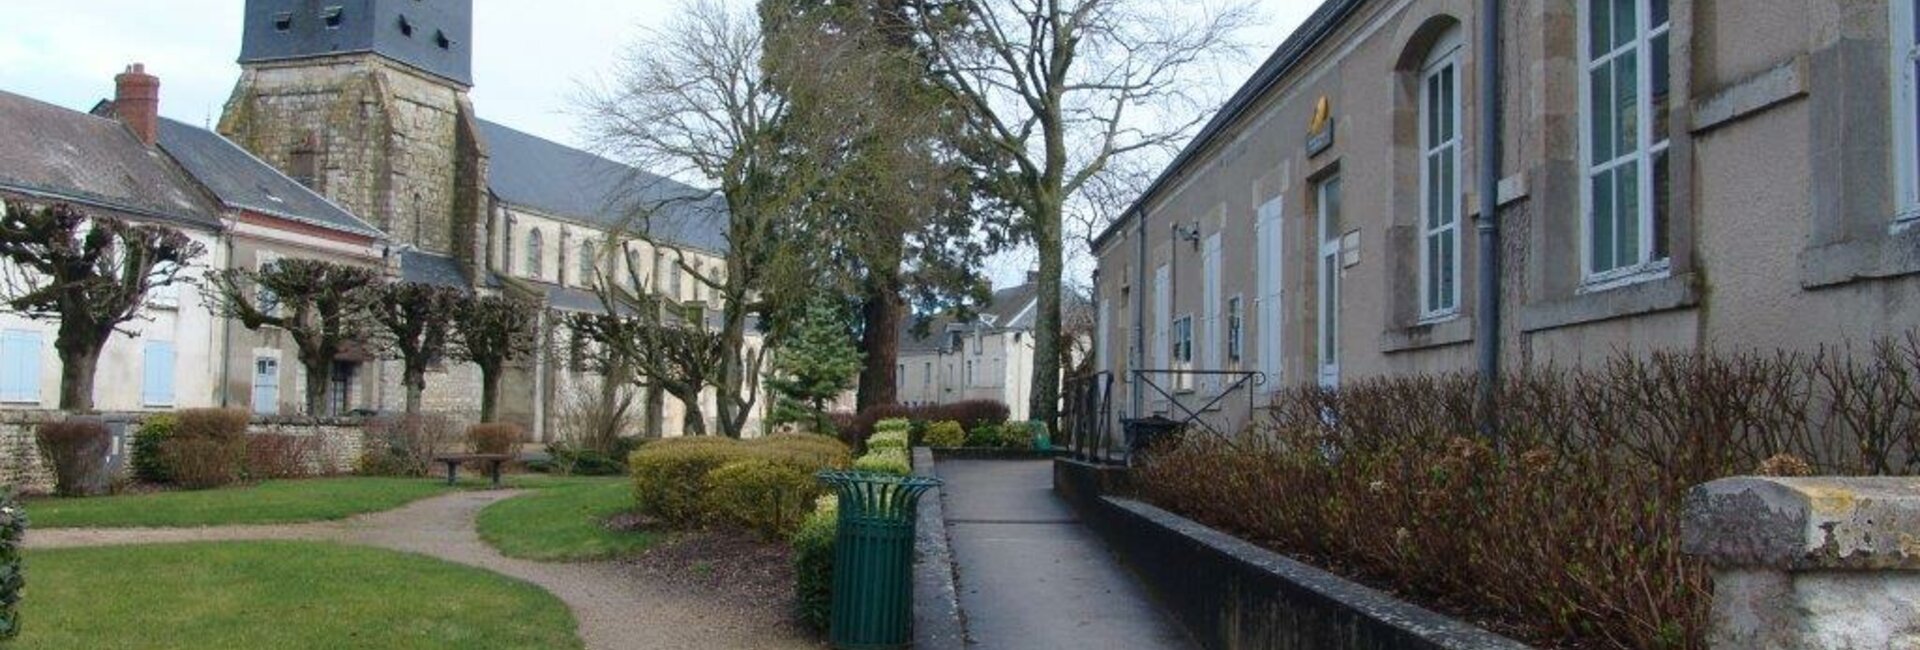 Village Beauce Mairie Patrimoine Orléans Loiret